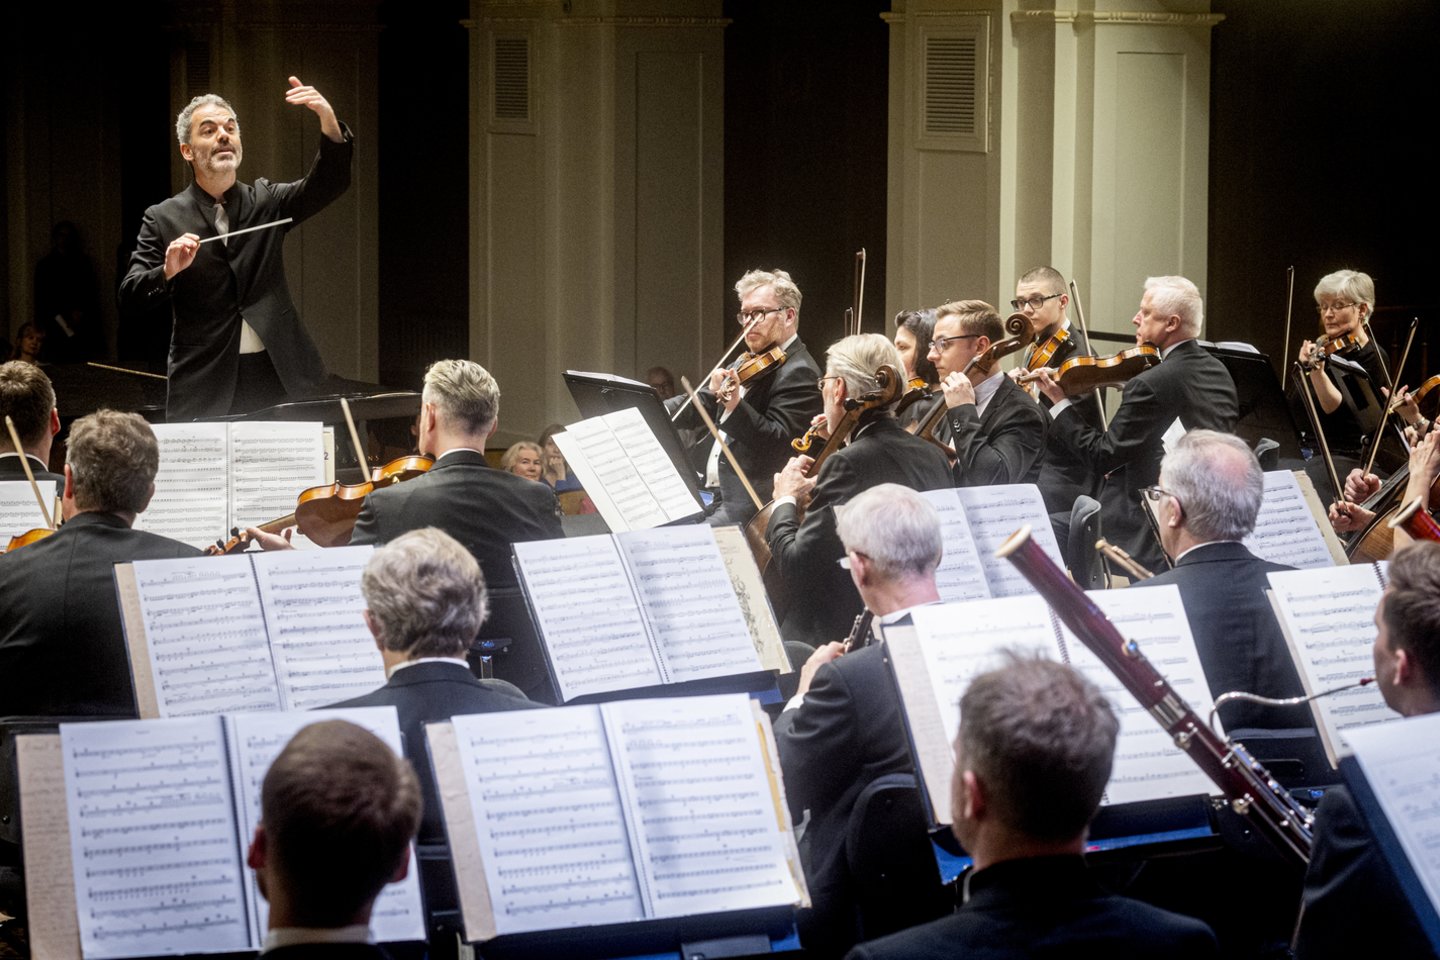 Birželio 7 d. Lietuvos nacionalinės filharmonijos Didžiojoje salėje įvyko koncertas „Dar apie Beethoveno genijų. Antti Siirala, Vassilis Christopoulos ir LKO“.<br>D.Matvejevo nuotr.